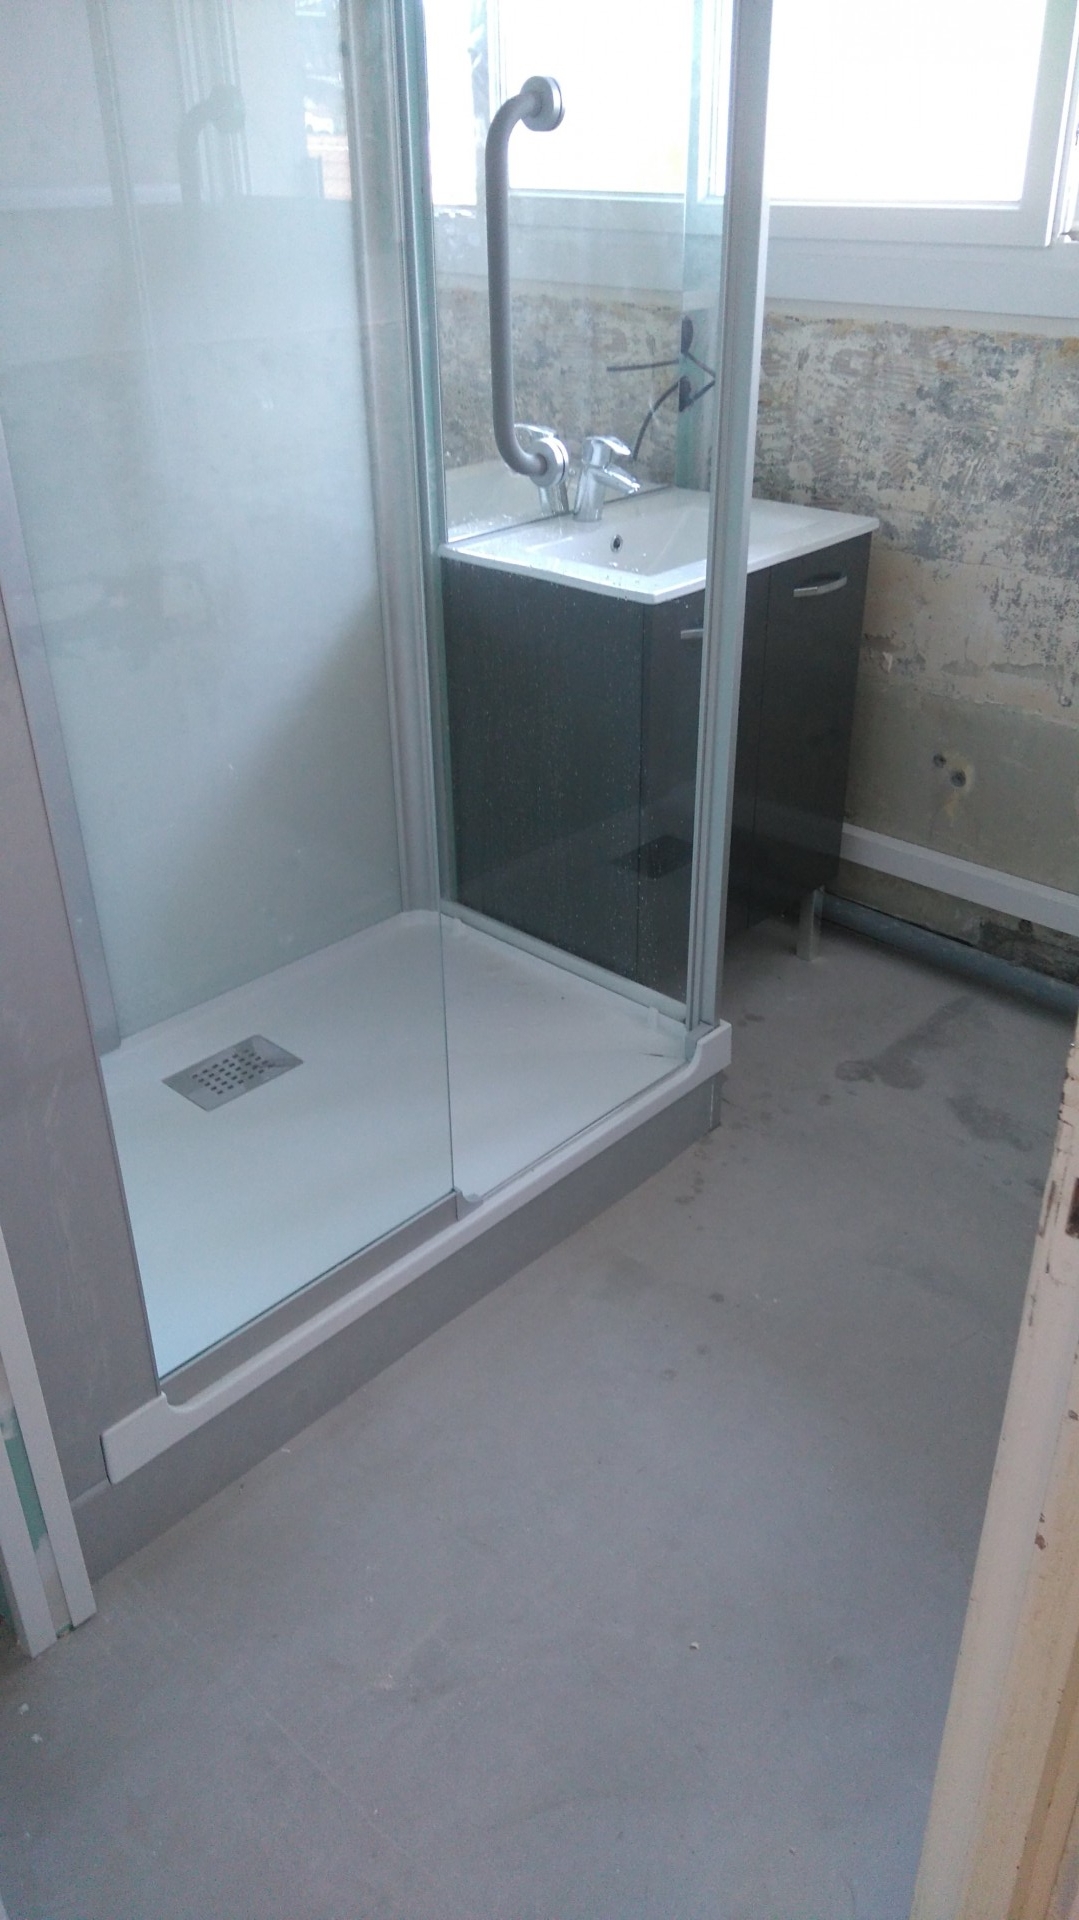 Installation d'une cabine de douche sécurisée Kinedo + meuble vasque. Entreprise Pierrel.